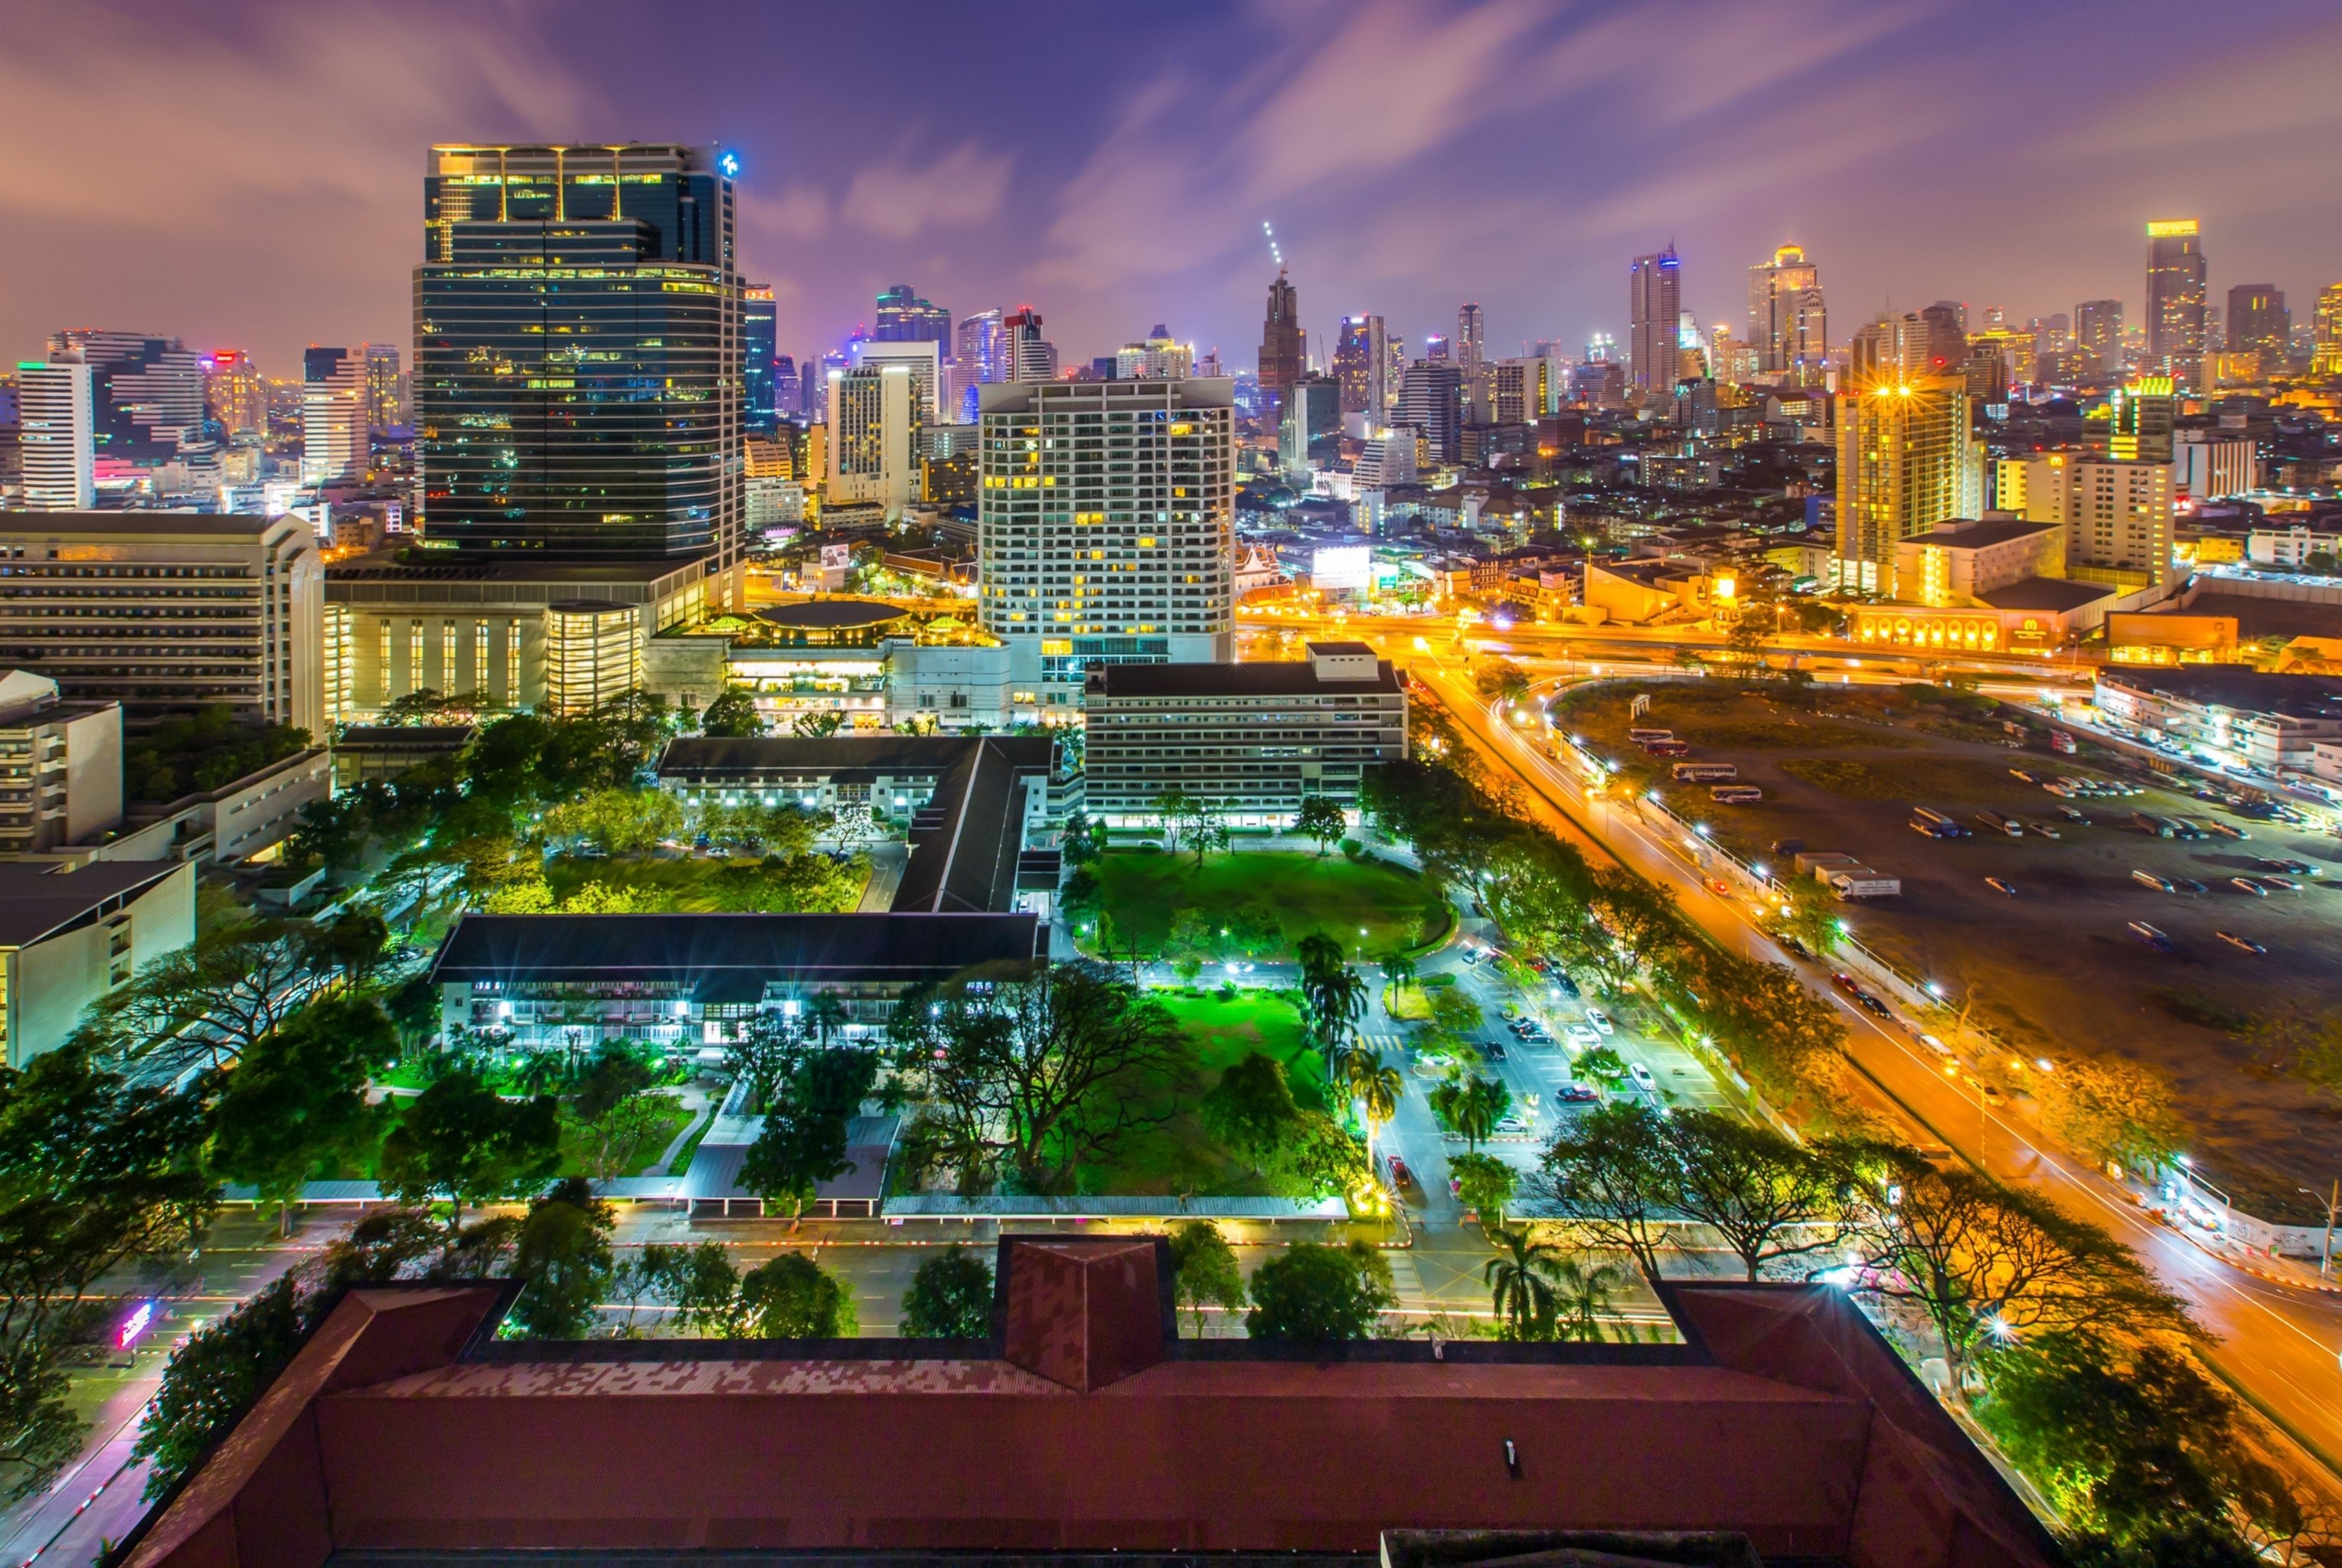 Bangkok: Chulalongkorn University, Night city view. 3060x2050 HD Wallpaper.